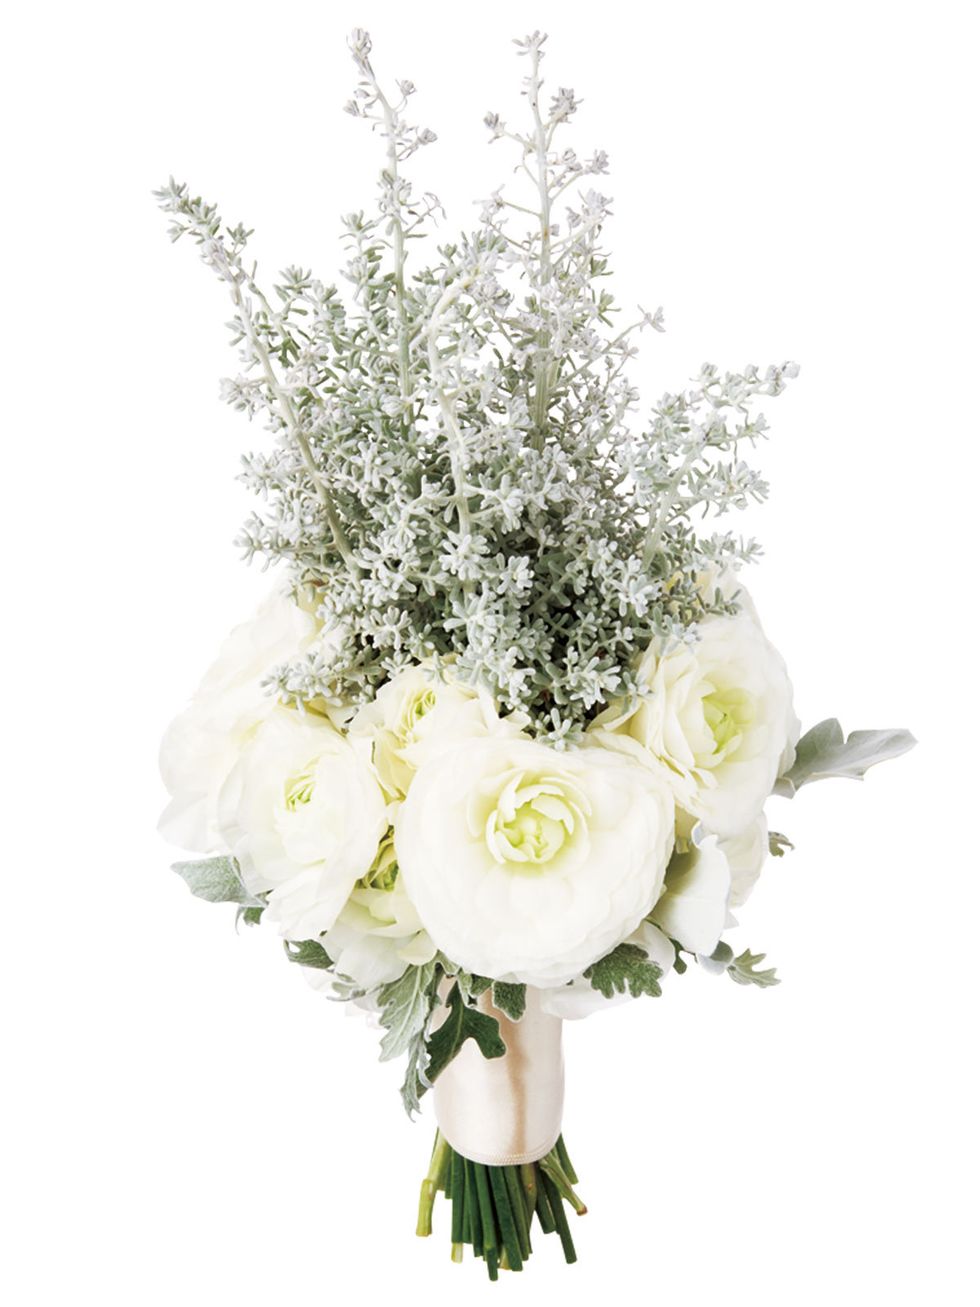 Flower, Bouquet, White, Cut flowers, Plant, Flower Arranging, Floristry, Floral design, Flowering plant, Rose, 